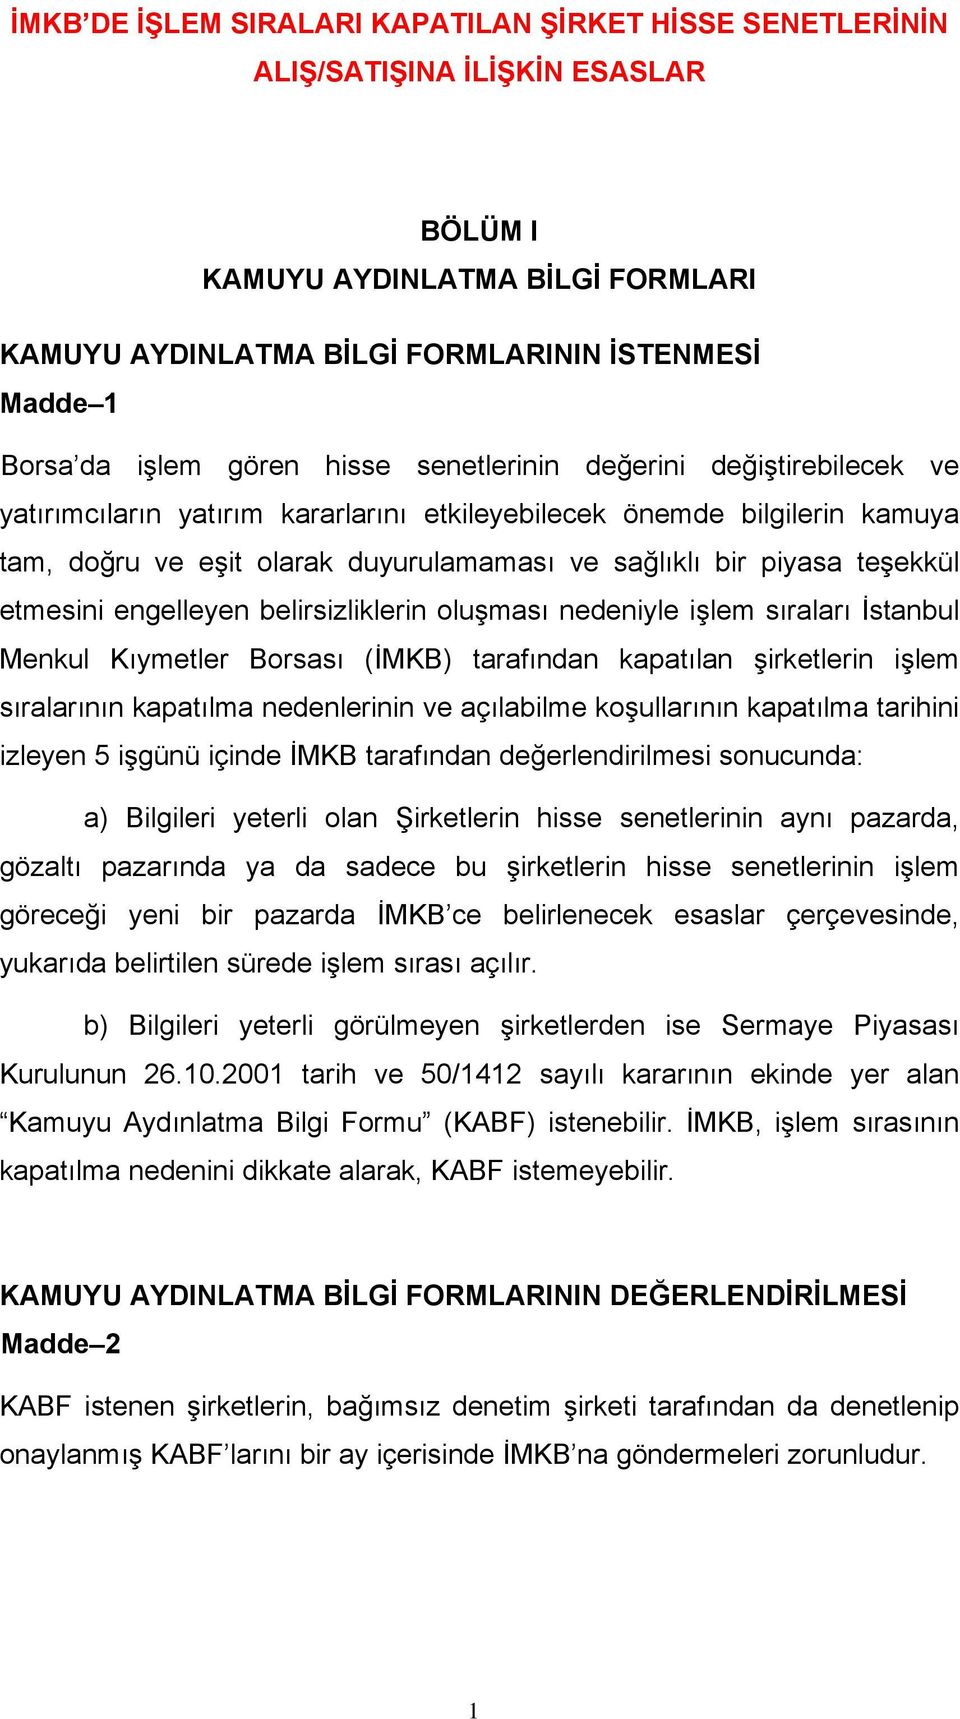 teşekkül etmesini engelleyen belirsizliklerin oluşması nedeniyle işlem sıraları İstanbul Menkul Kıymetler Borsası (İMKB) tarafından kapatılan şirketlerin işlem sıralarının kapatılma nedenlerinin ve